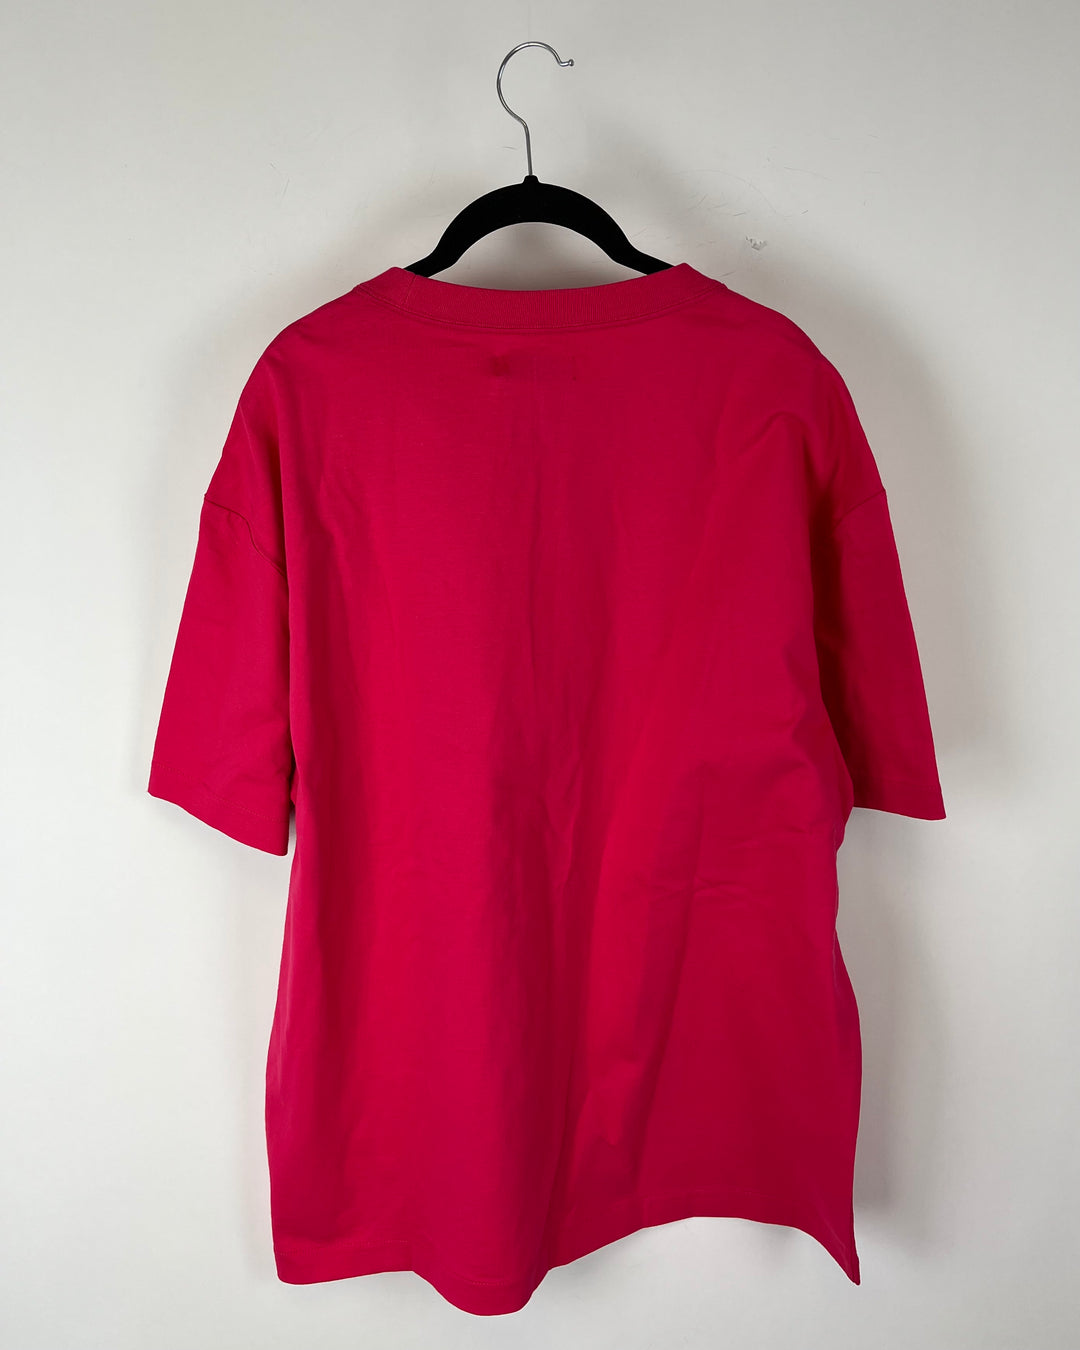 MENS Pink Short Sleeve Button Down Shirt - Medium